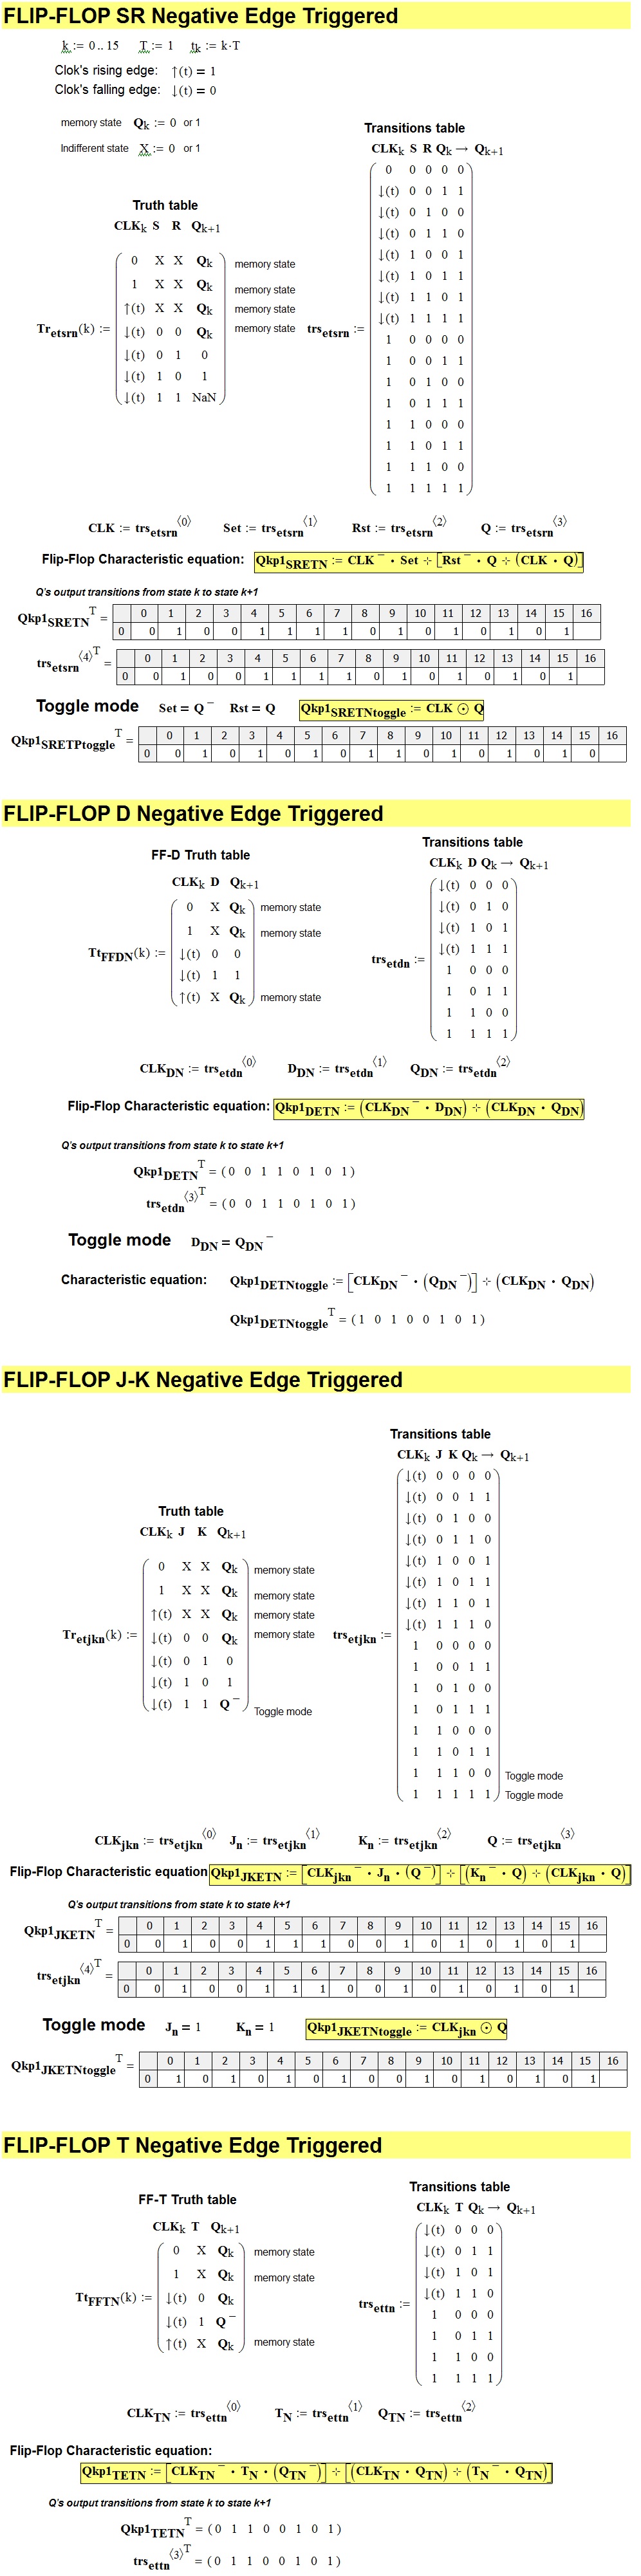 Flip-Flop Negative Edge Triggered.jpg